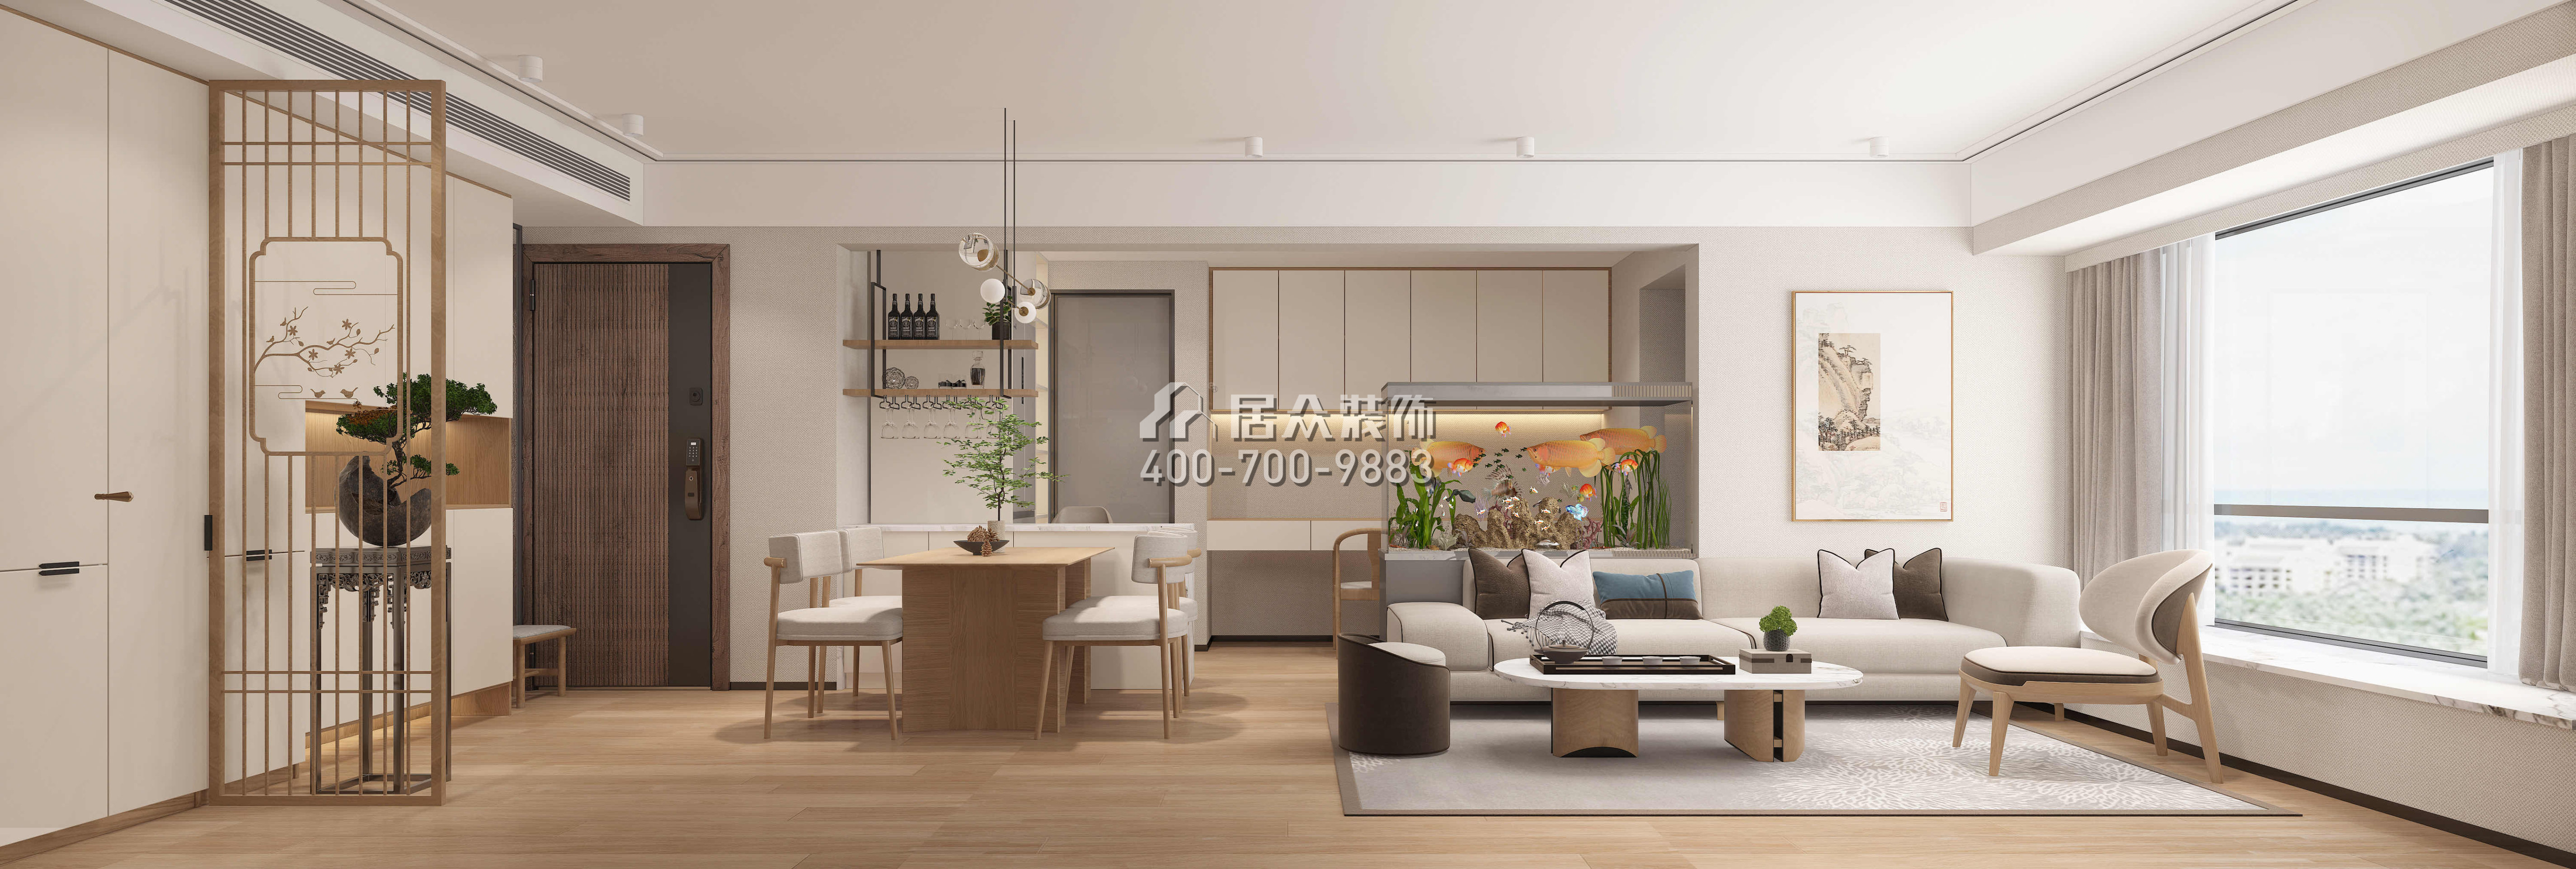 現代城夢想家園71平方米中式風格平層戶型客廳裝修效果圖